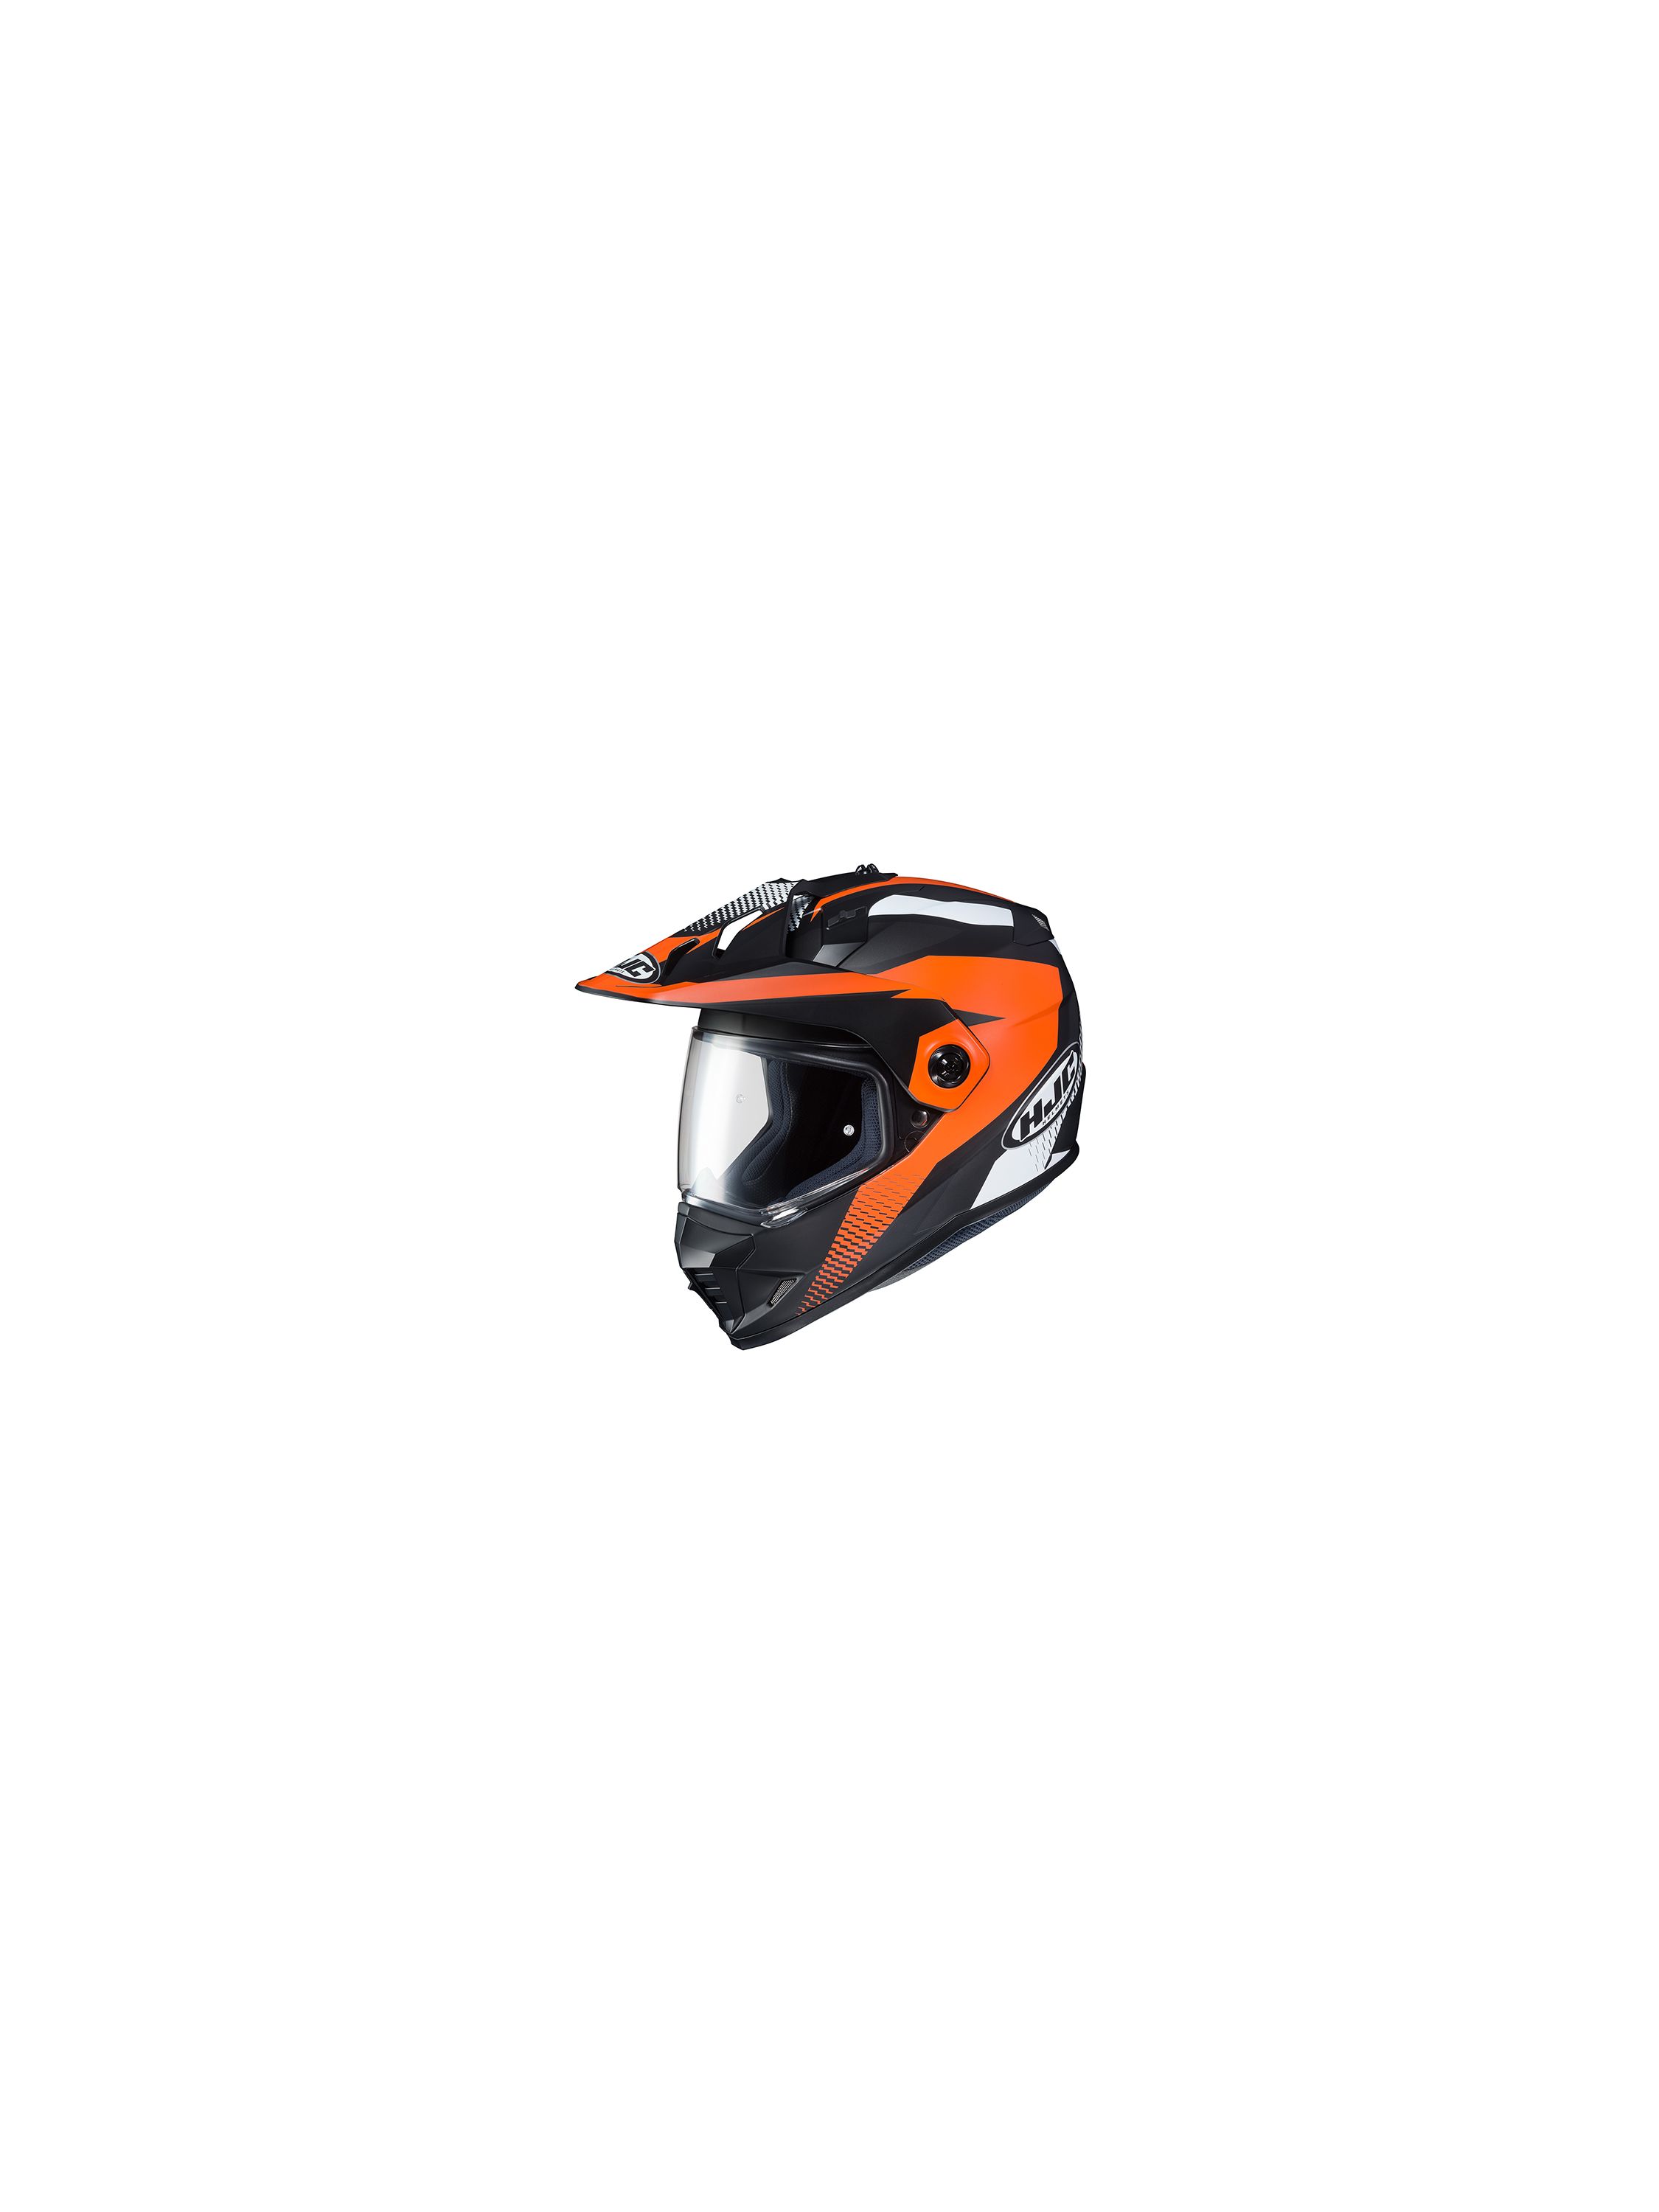 贈呈 Hjc Hjh134 Ds X1 Awing エーウィング ブラック オレンジ マットカラー デュアルスポーツヘルメット オンロード オフロード Dsx1 Sarozambia Com